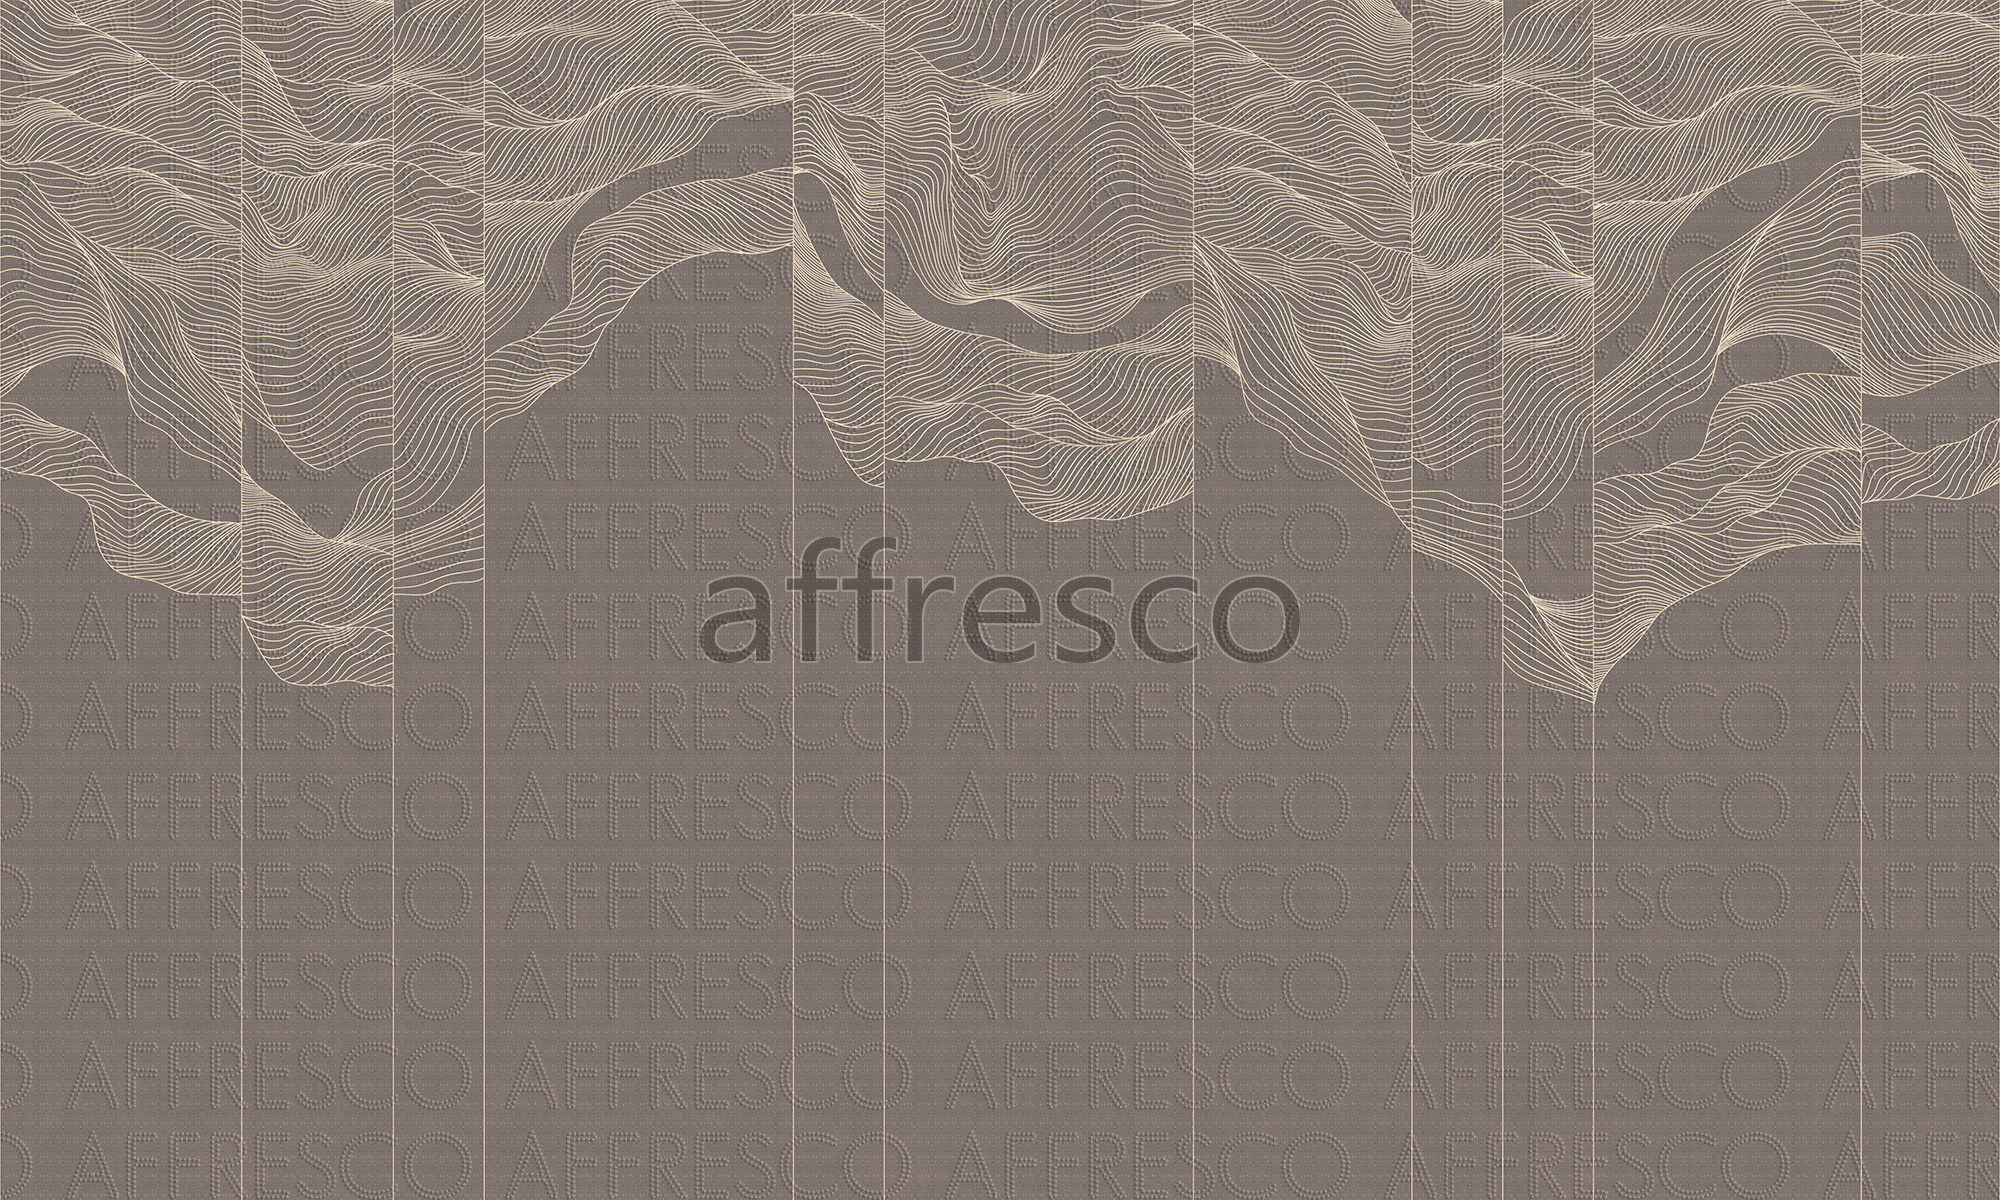 AF2103-COL5 | Line Art | Affresco Factory